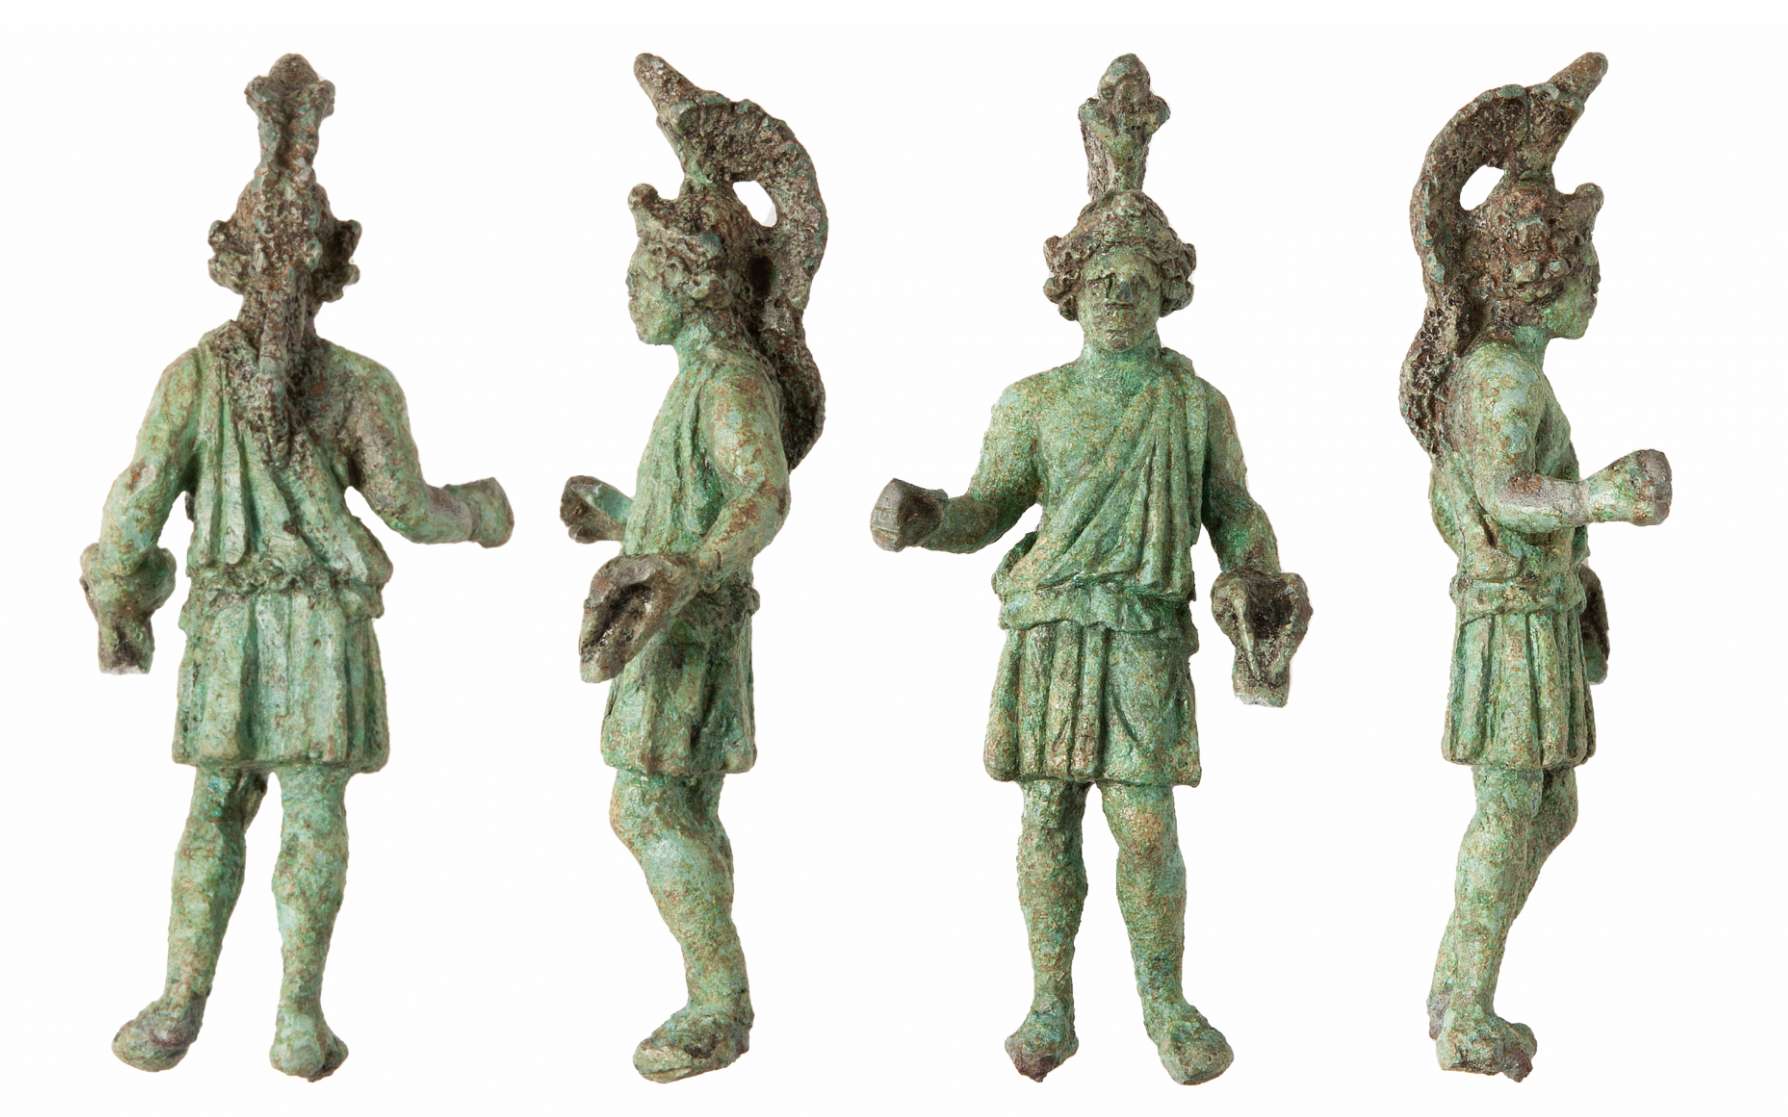 Une statuette en bronze datant de l'époque gallo-romaine a été découverte près de Rennes et représenterait le dieu Mars. © Emmanuelle Collado, Inrap